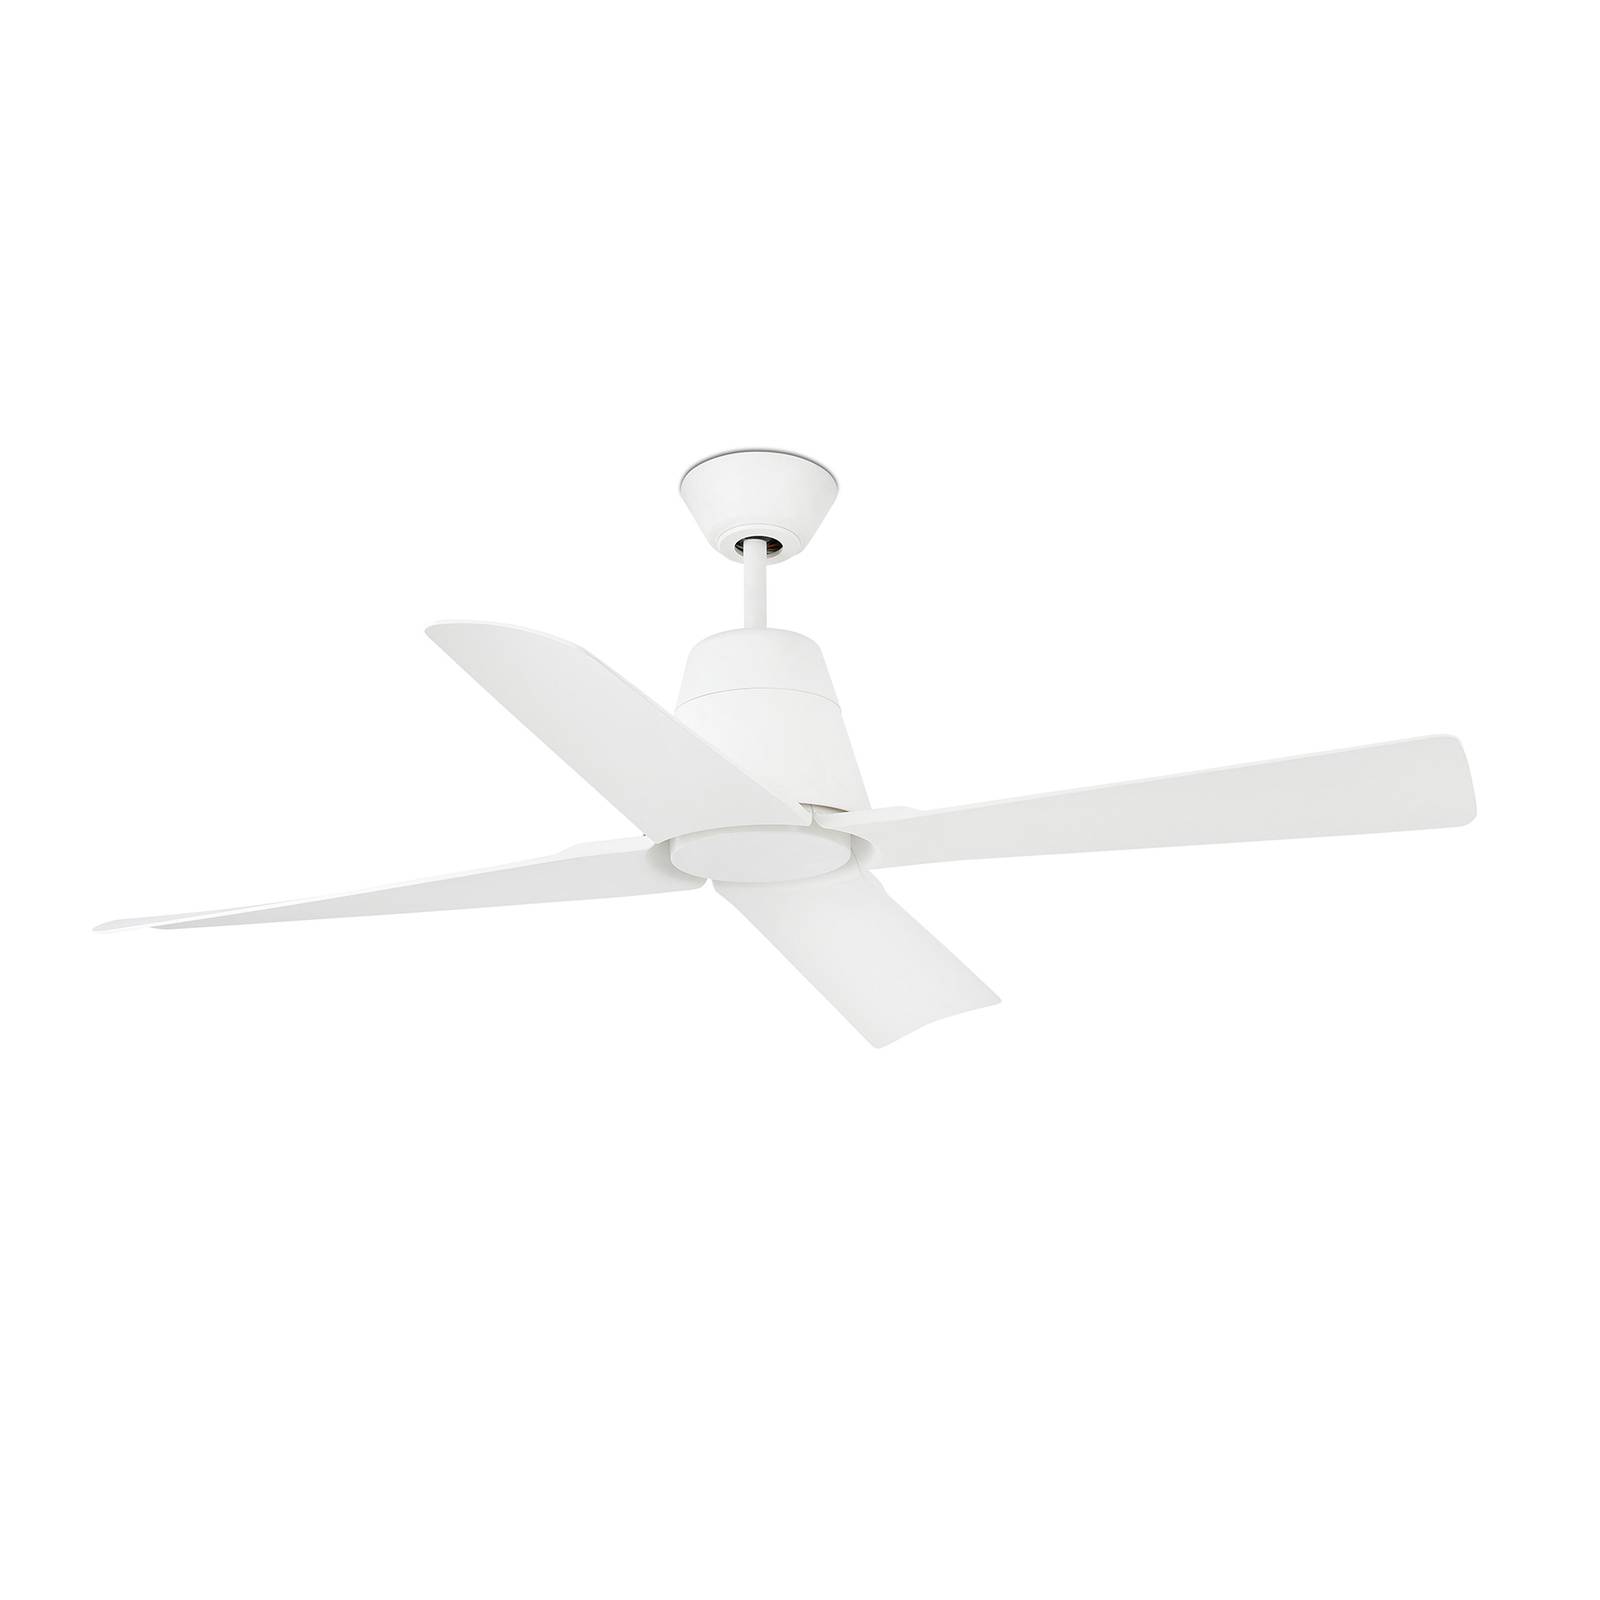 Typhoon ceiling fan IP44 WiFi option white